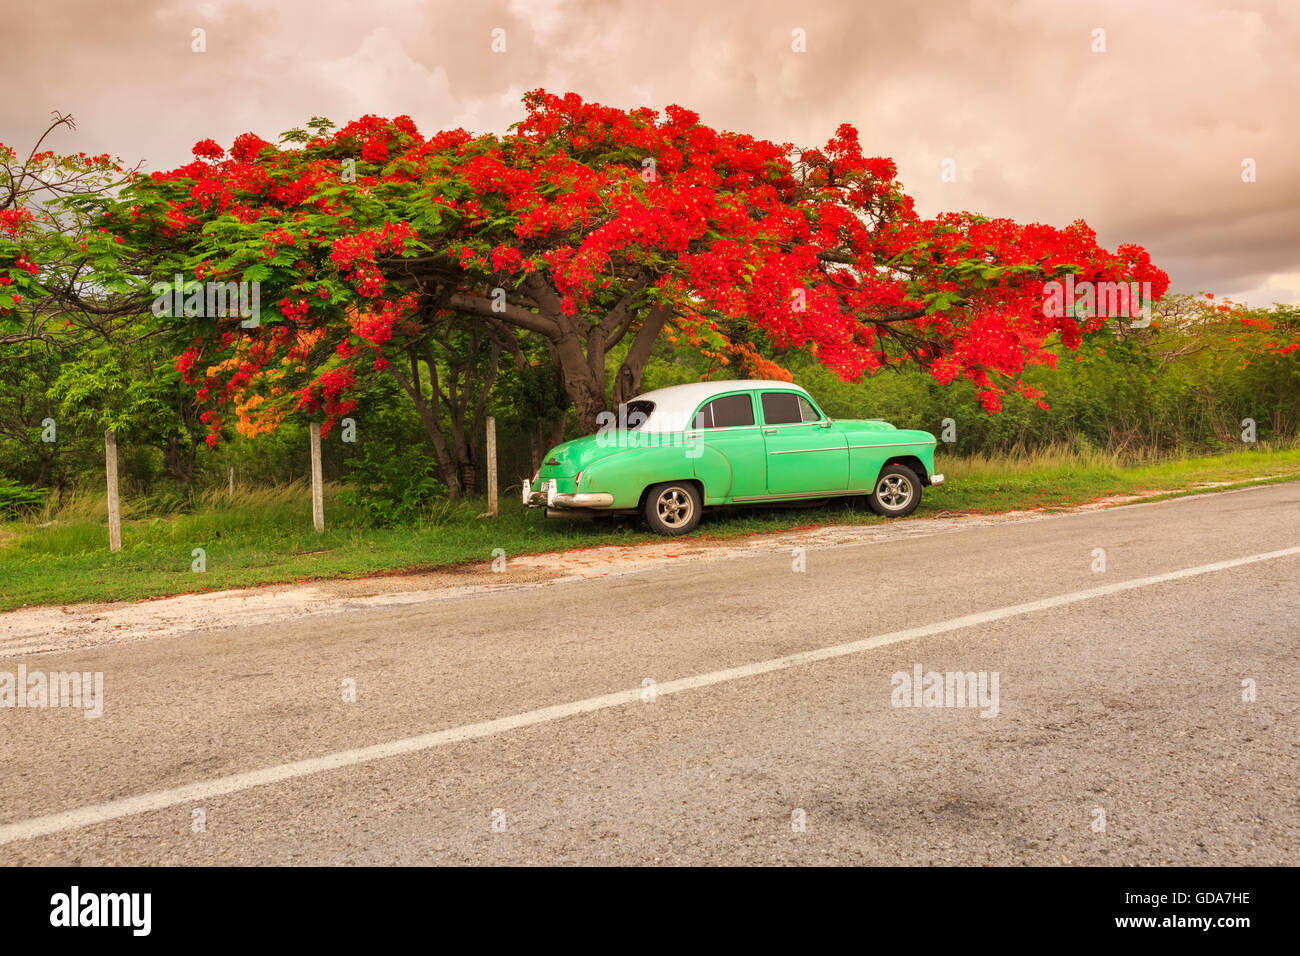 Eine extravagante oder Flame Tree (Delonix Regia, Royal Poinciana) in vollen roten Blumen und grün 1950 amerikanische Oldtimer, ländlichen Kuba Stockfoto